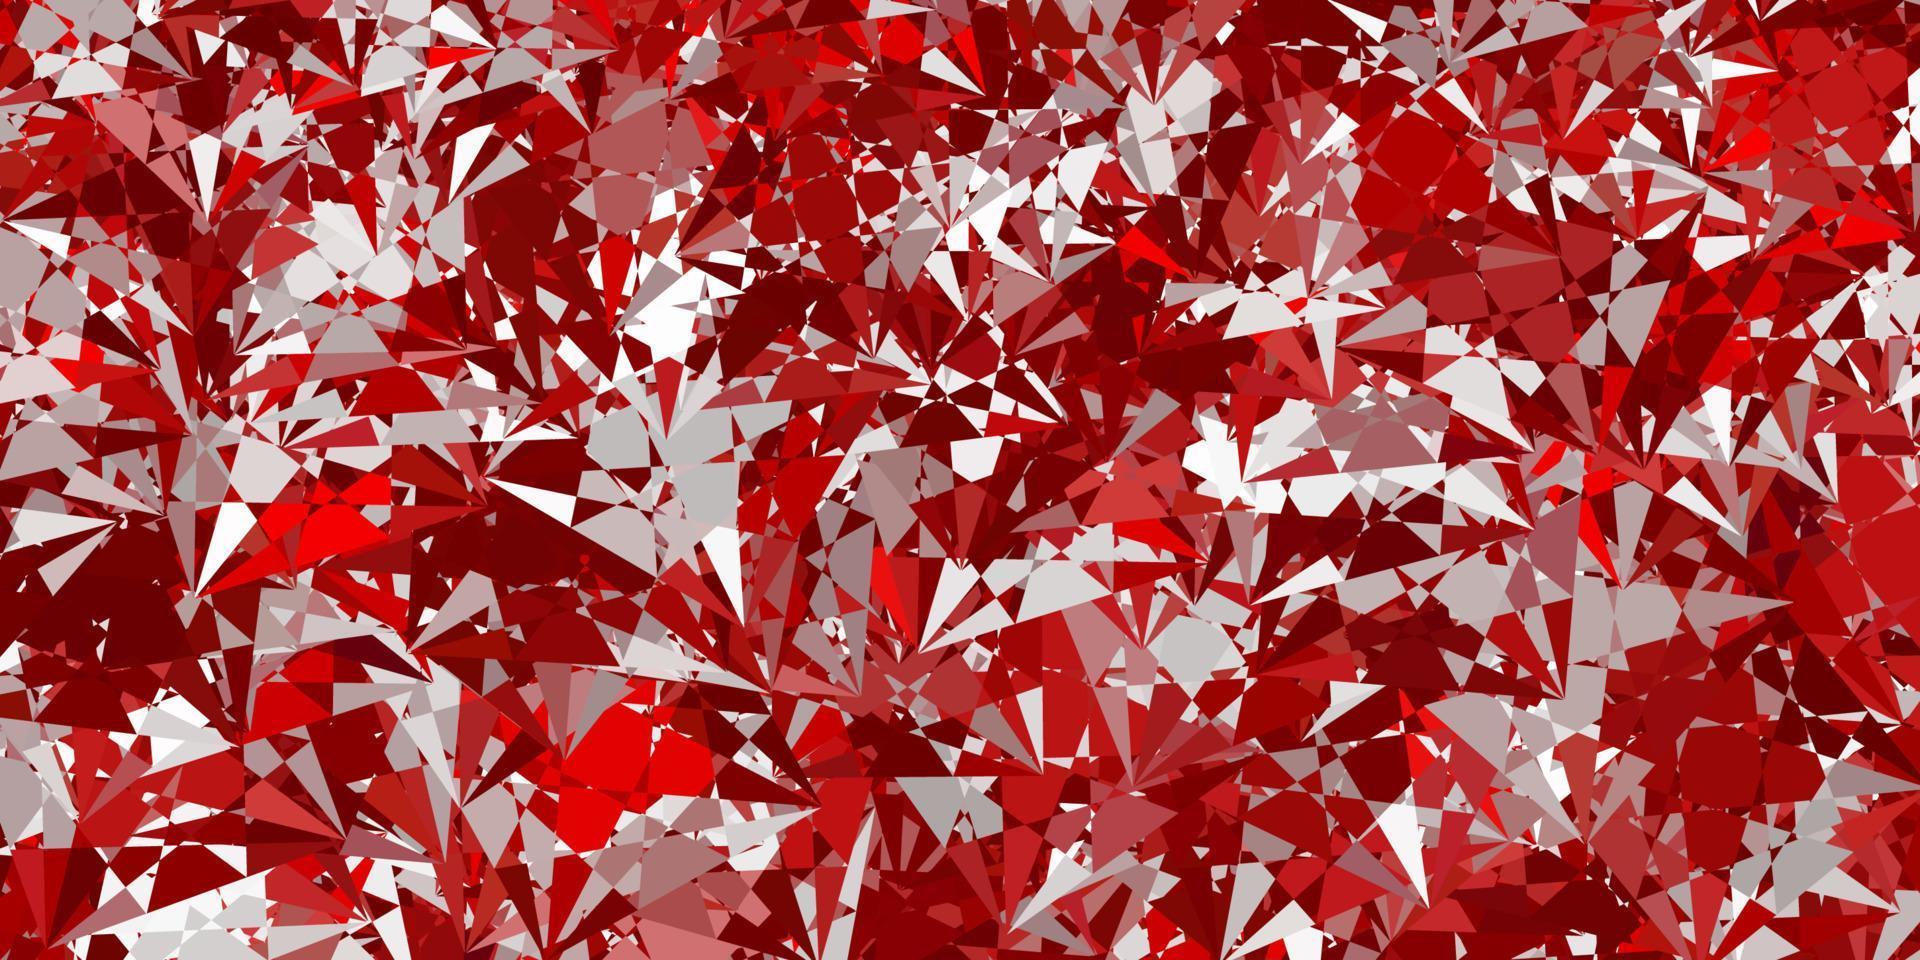 diseño de vector rojo claro con formas triangulares.